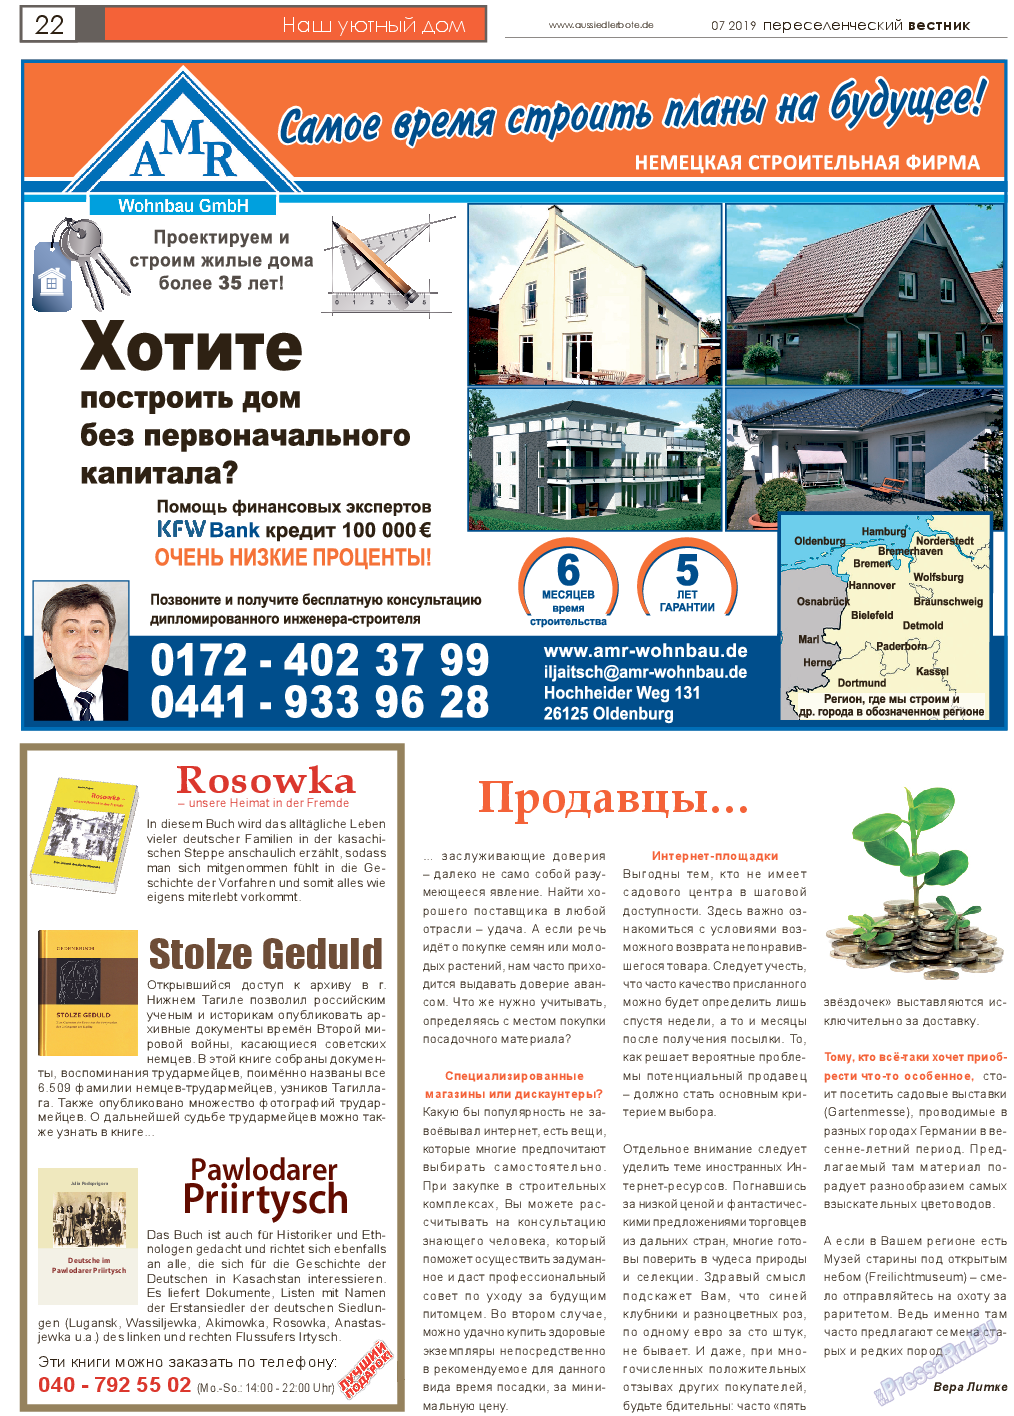 Переселенческий вестник, газета. 2019 №7 стр.22